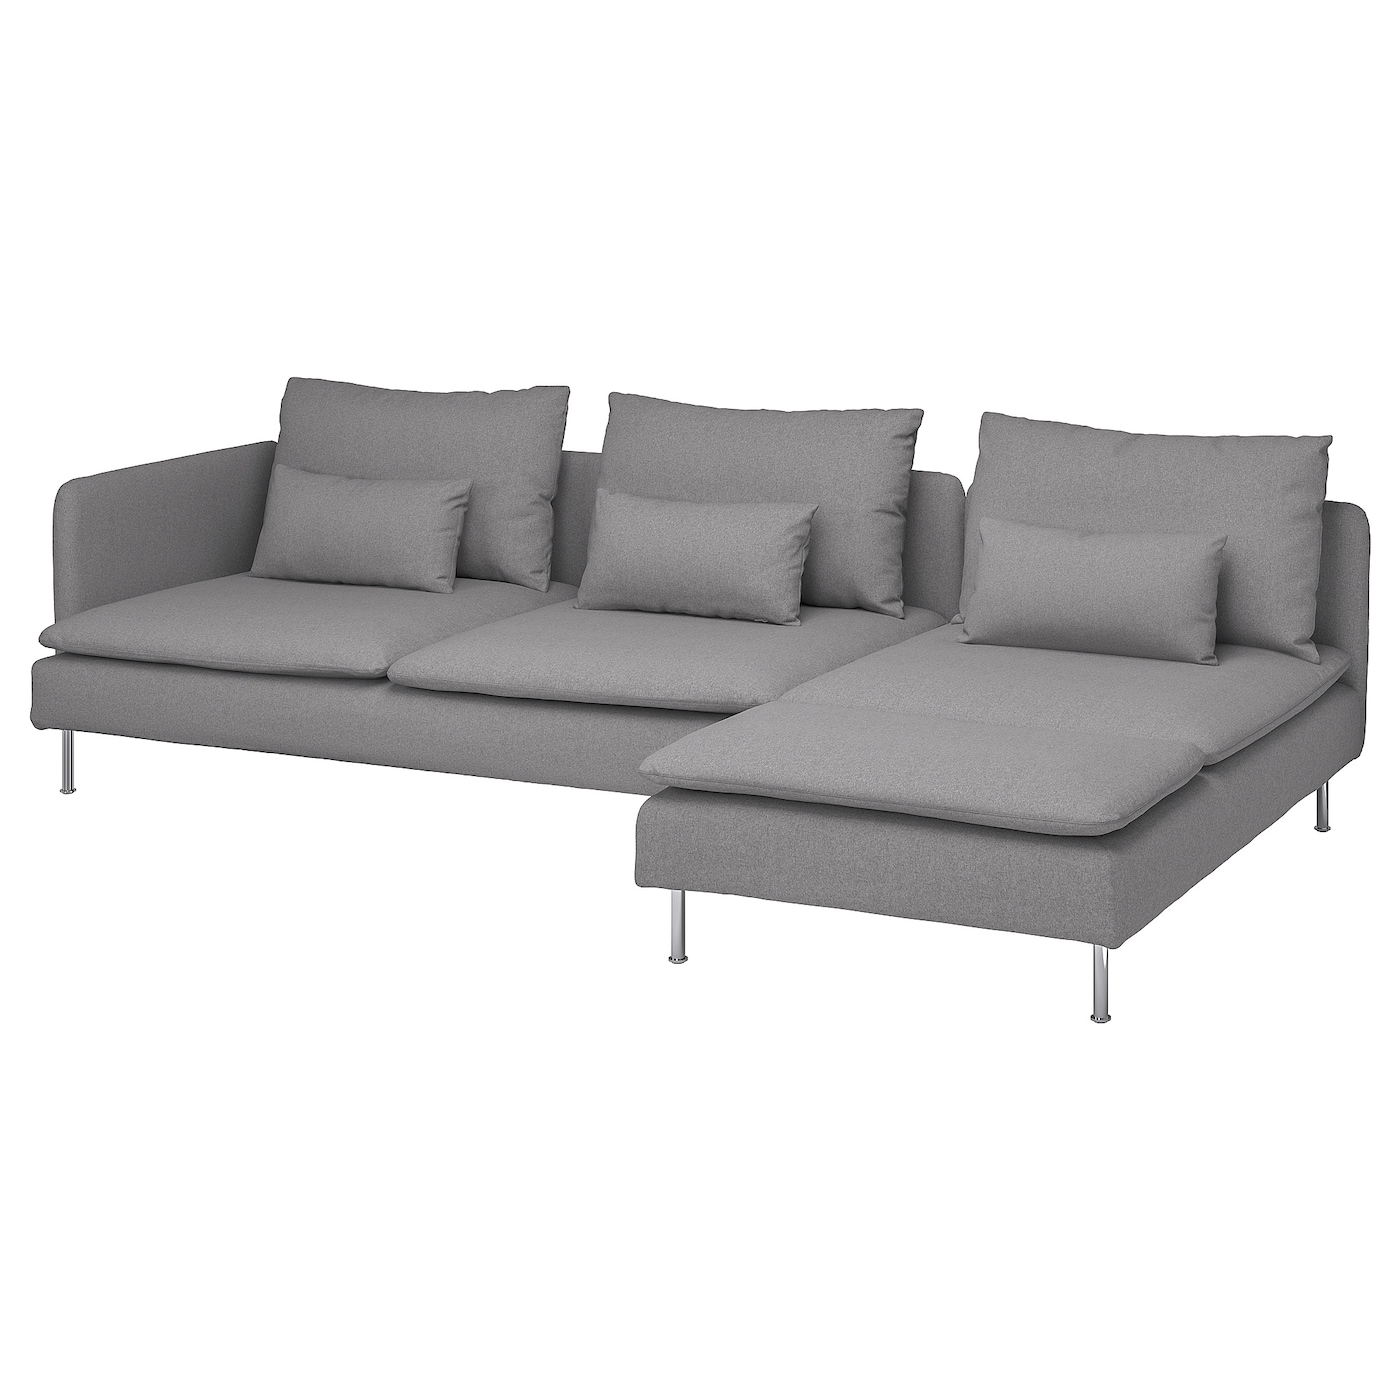 3-местный диван и шезлонг - IKEA SÖDERHAMN/SODERHAMN, 99x291см, серый/светло-серый, СЕДЕРХАМН ИКЕА